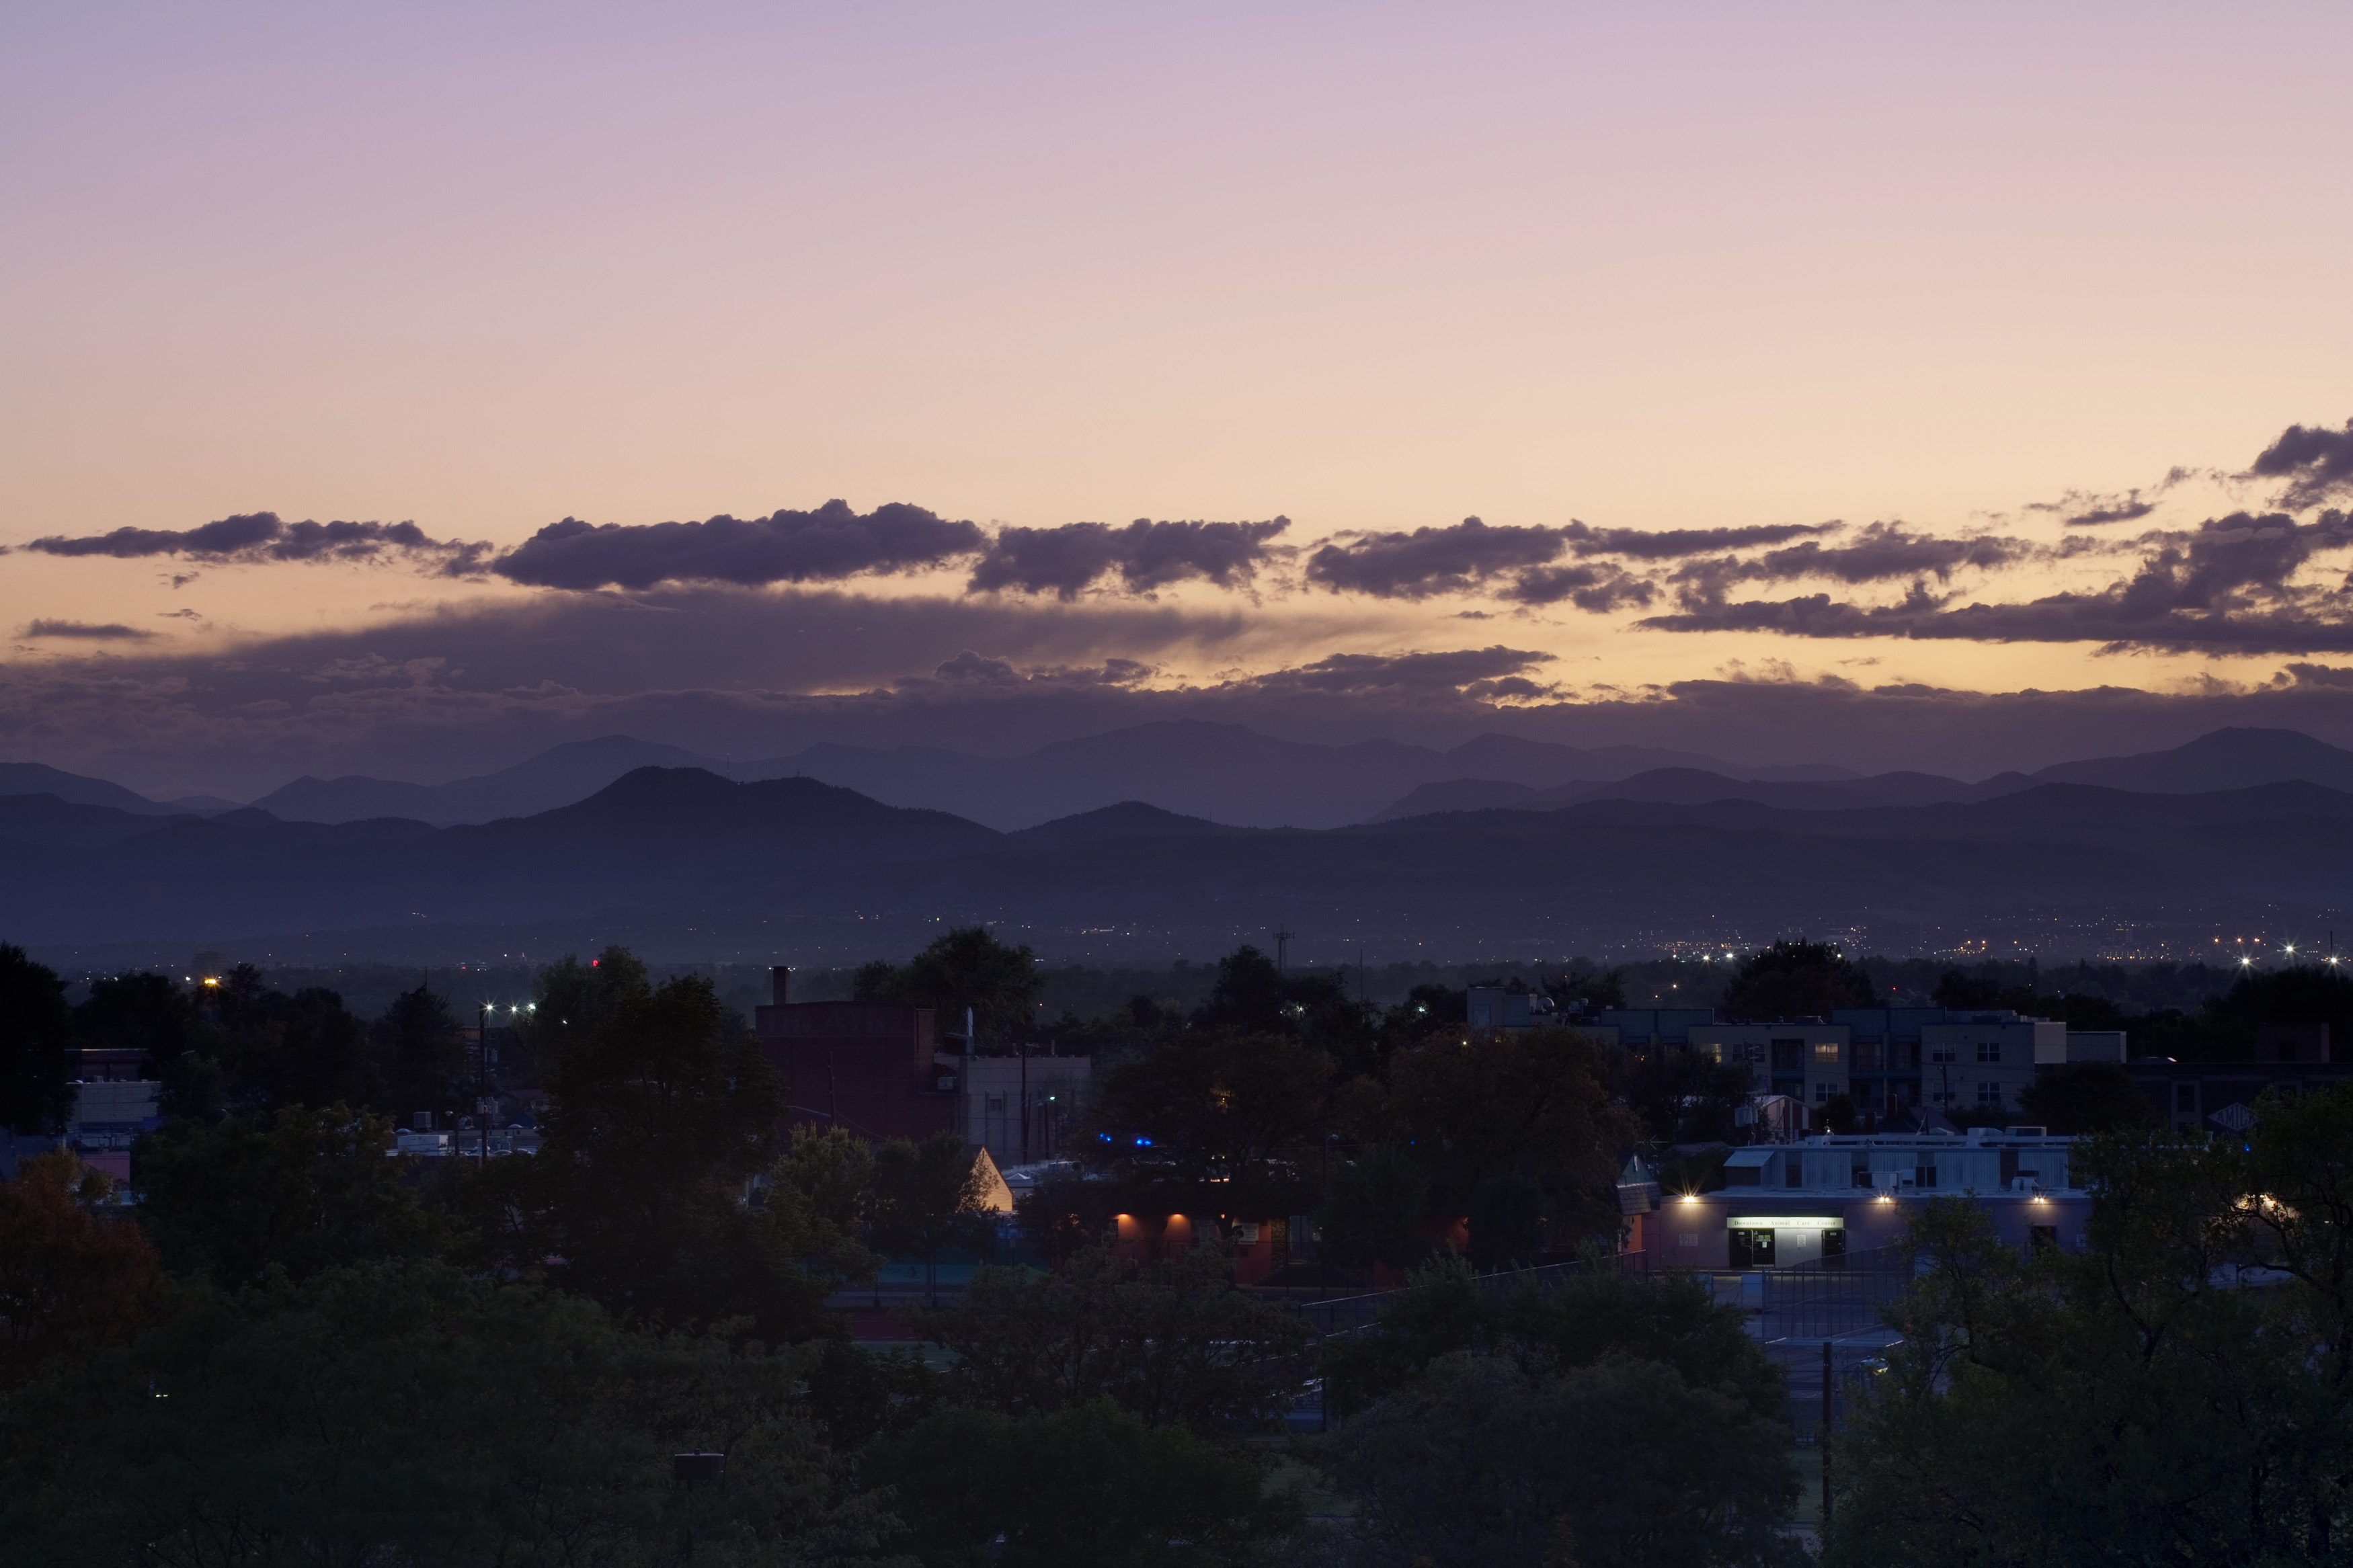 Mount Evans sunset - September 29, 2011